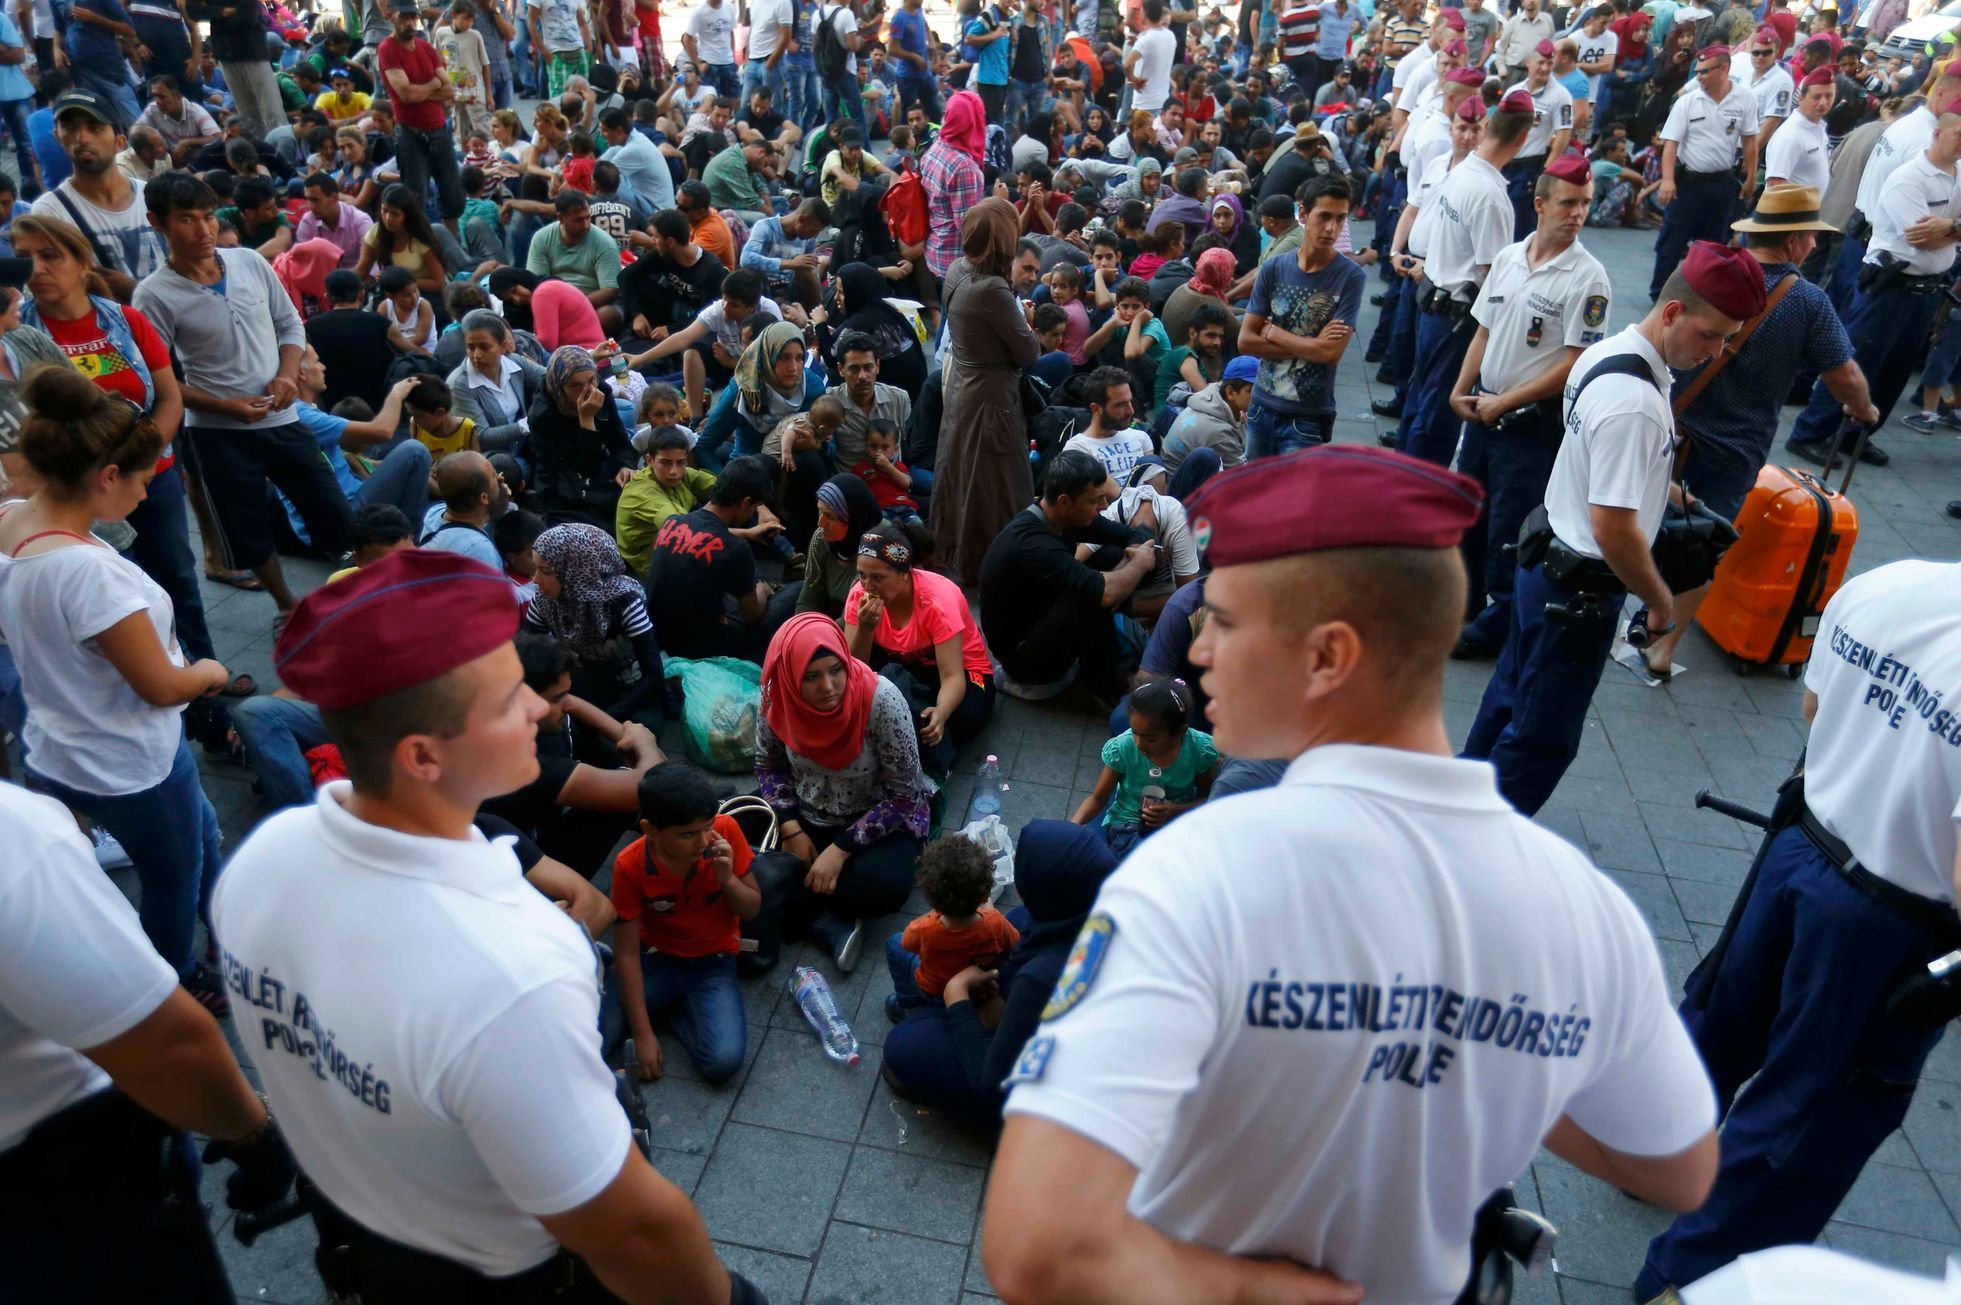 Maďaři ve snaze ubránit Schengen uzavřeli největší nádraží